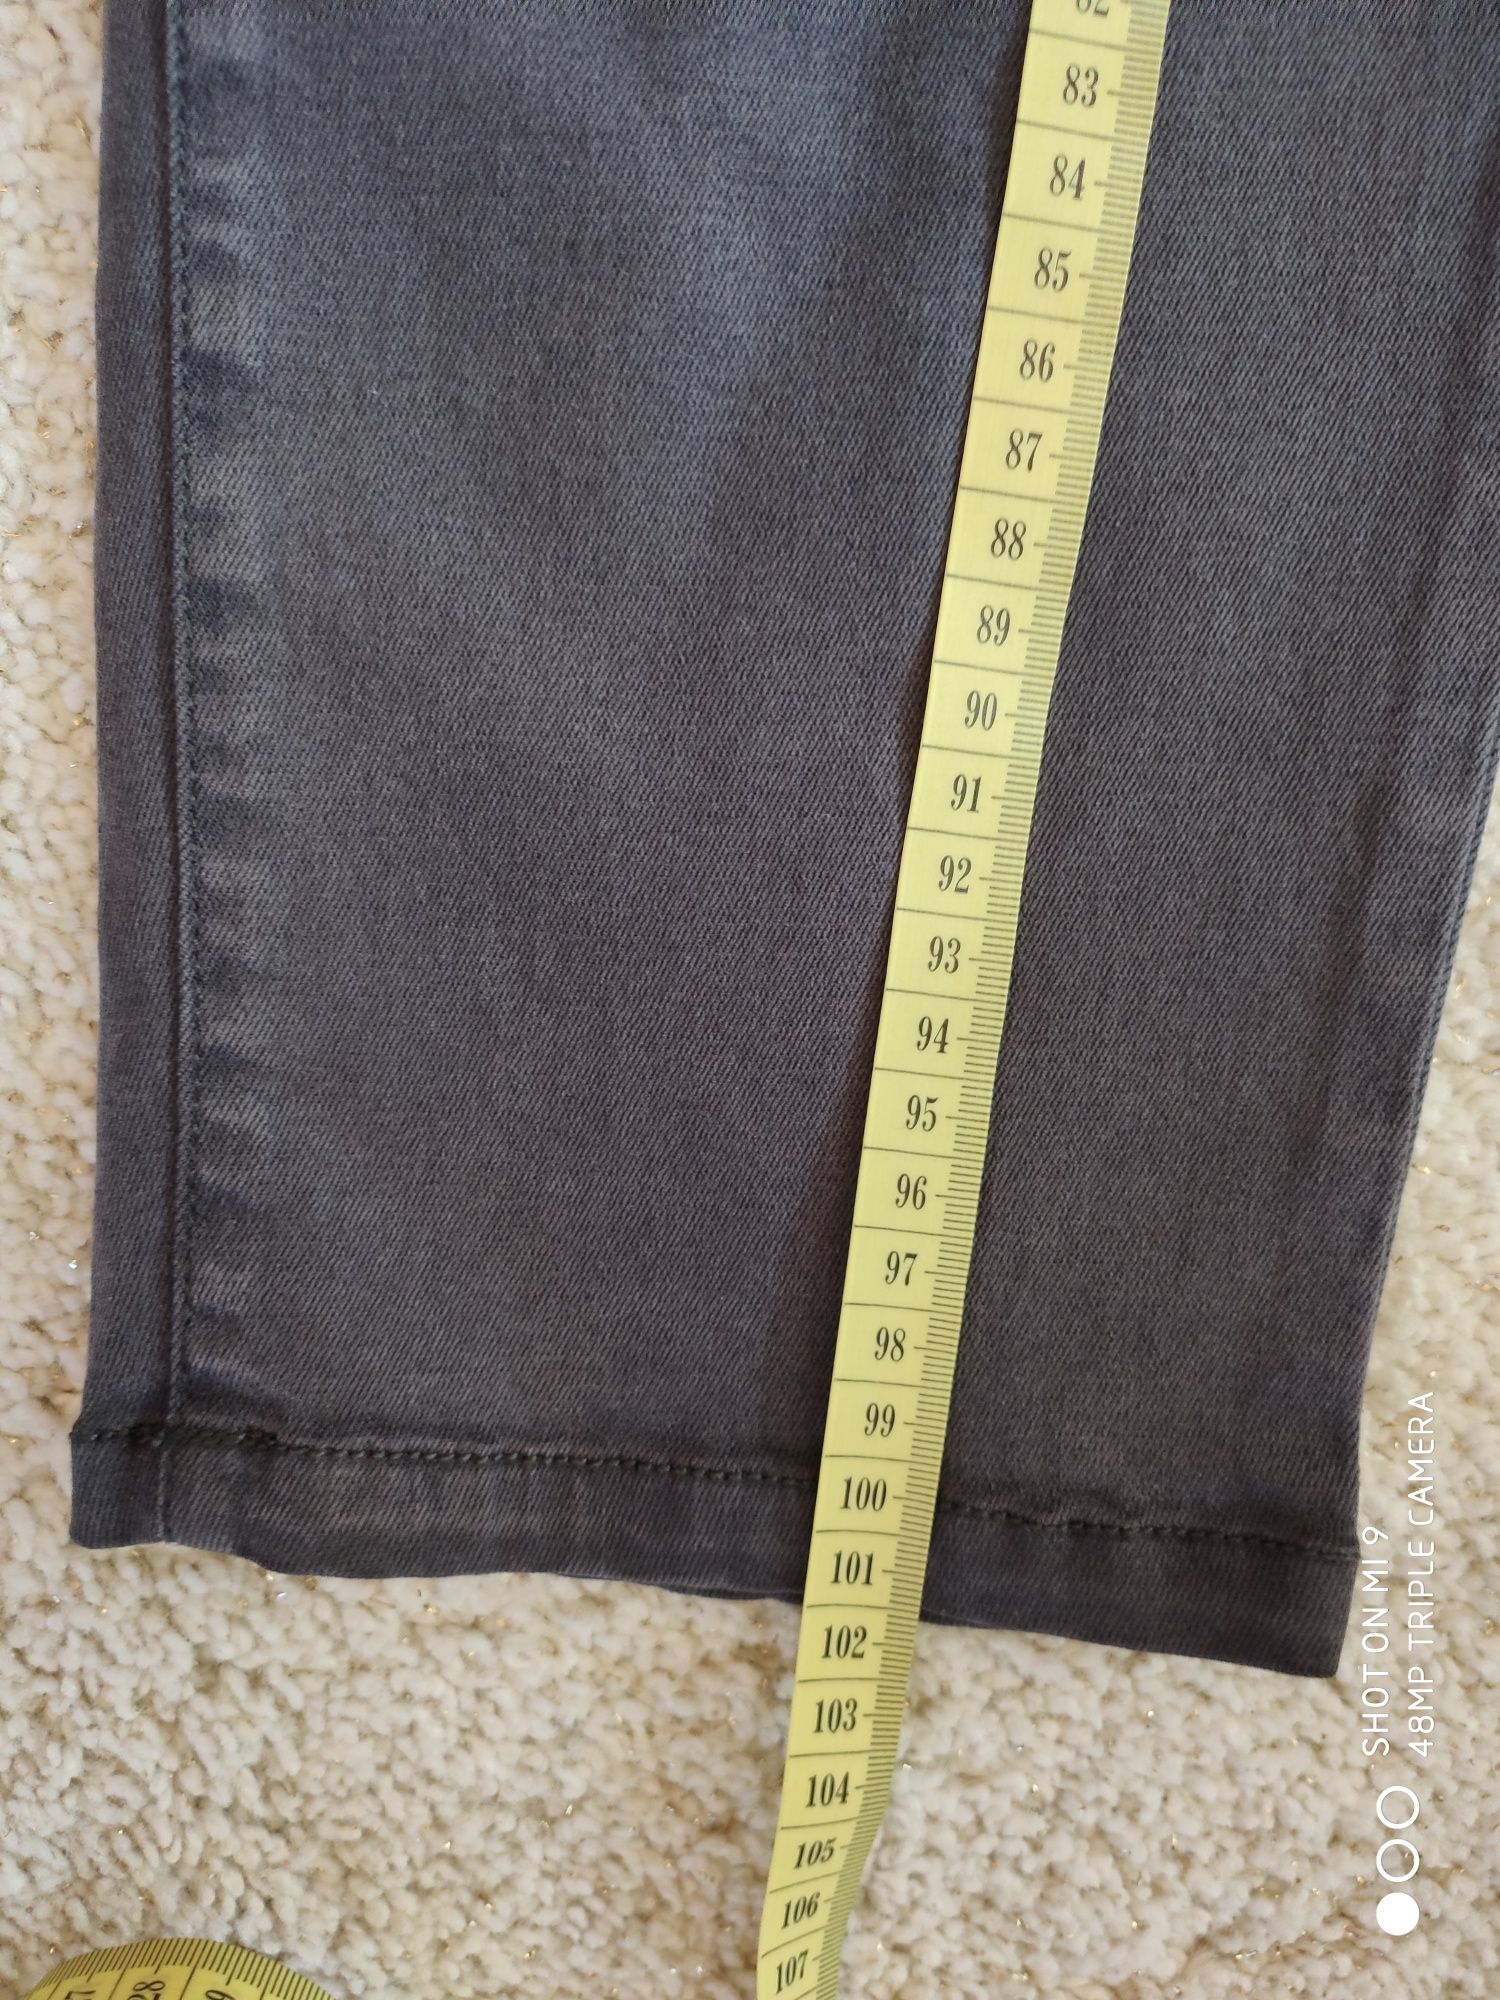 Nowe super spodnie jeansowe damskie przysłane z Kanady, rozmiar 44.